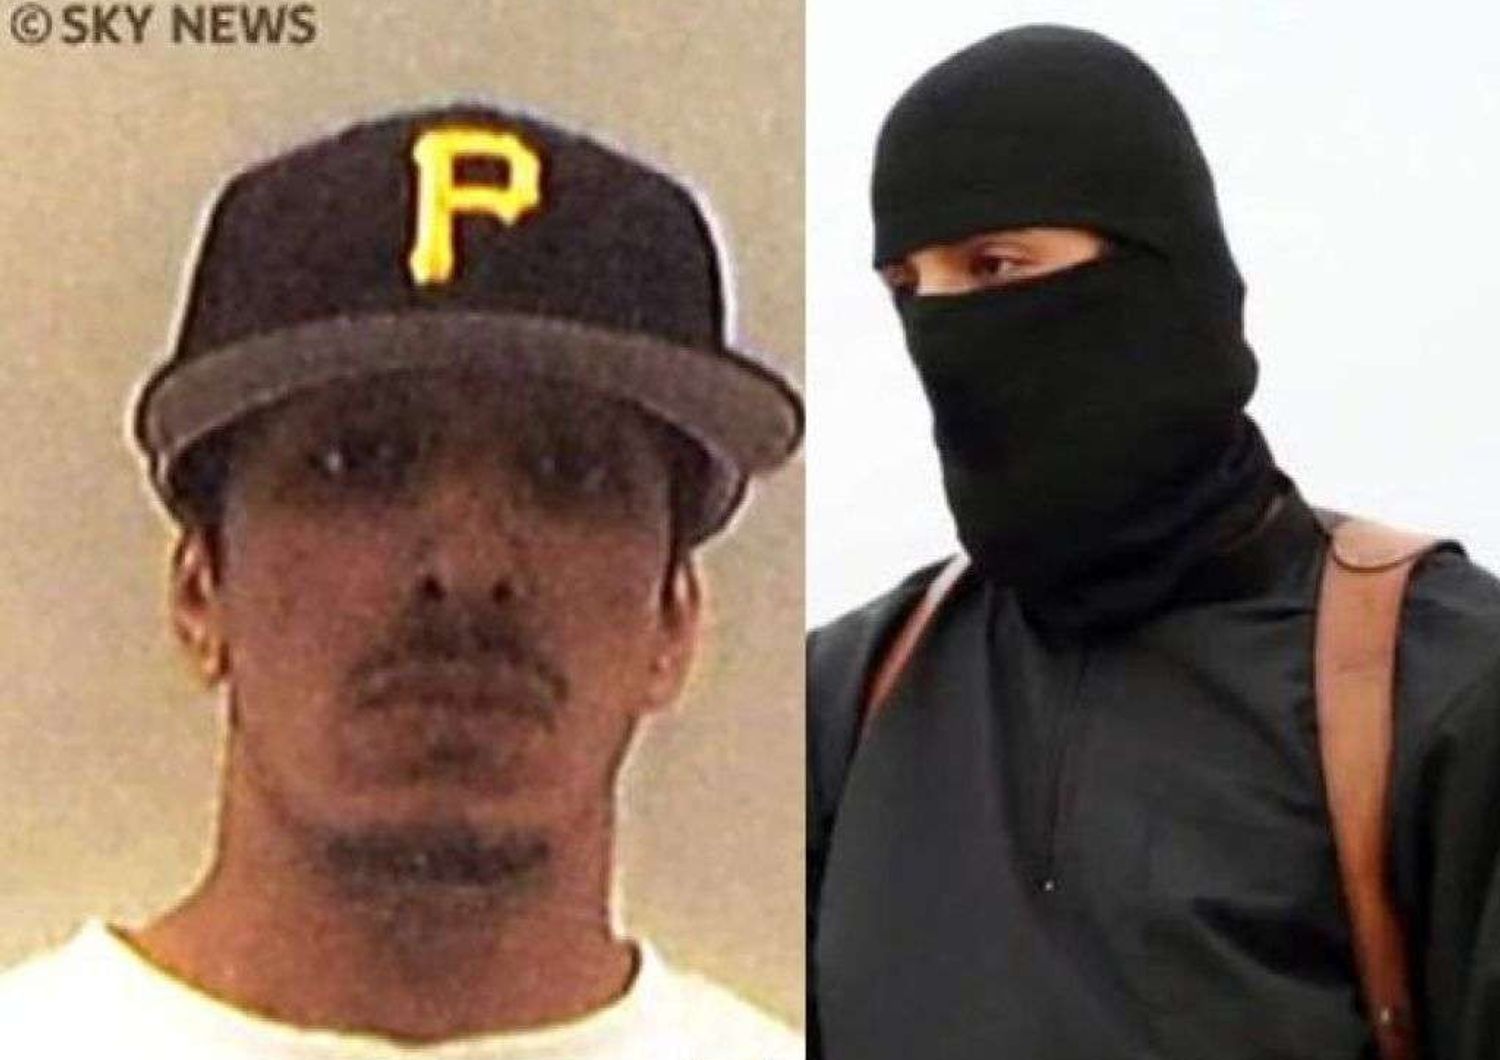 Isis: la prima foto del boia Jihadi John, la pubblica Sky News